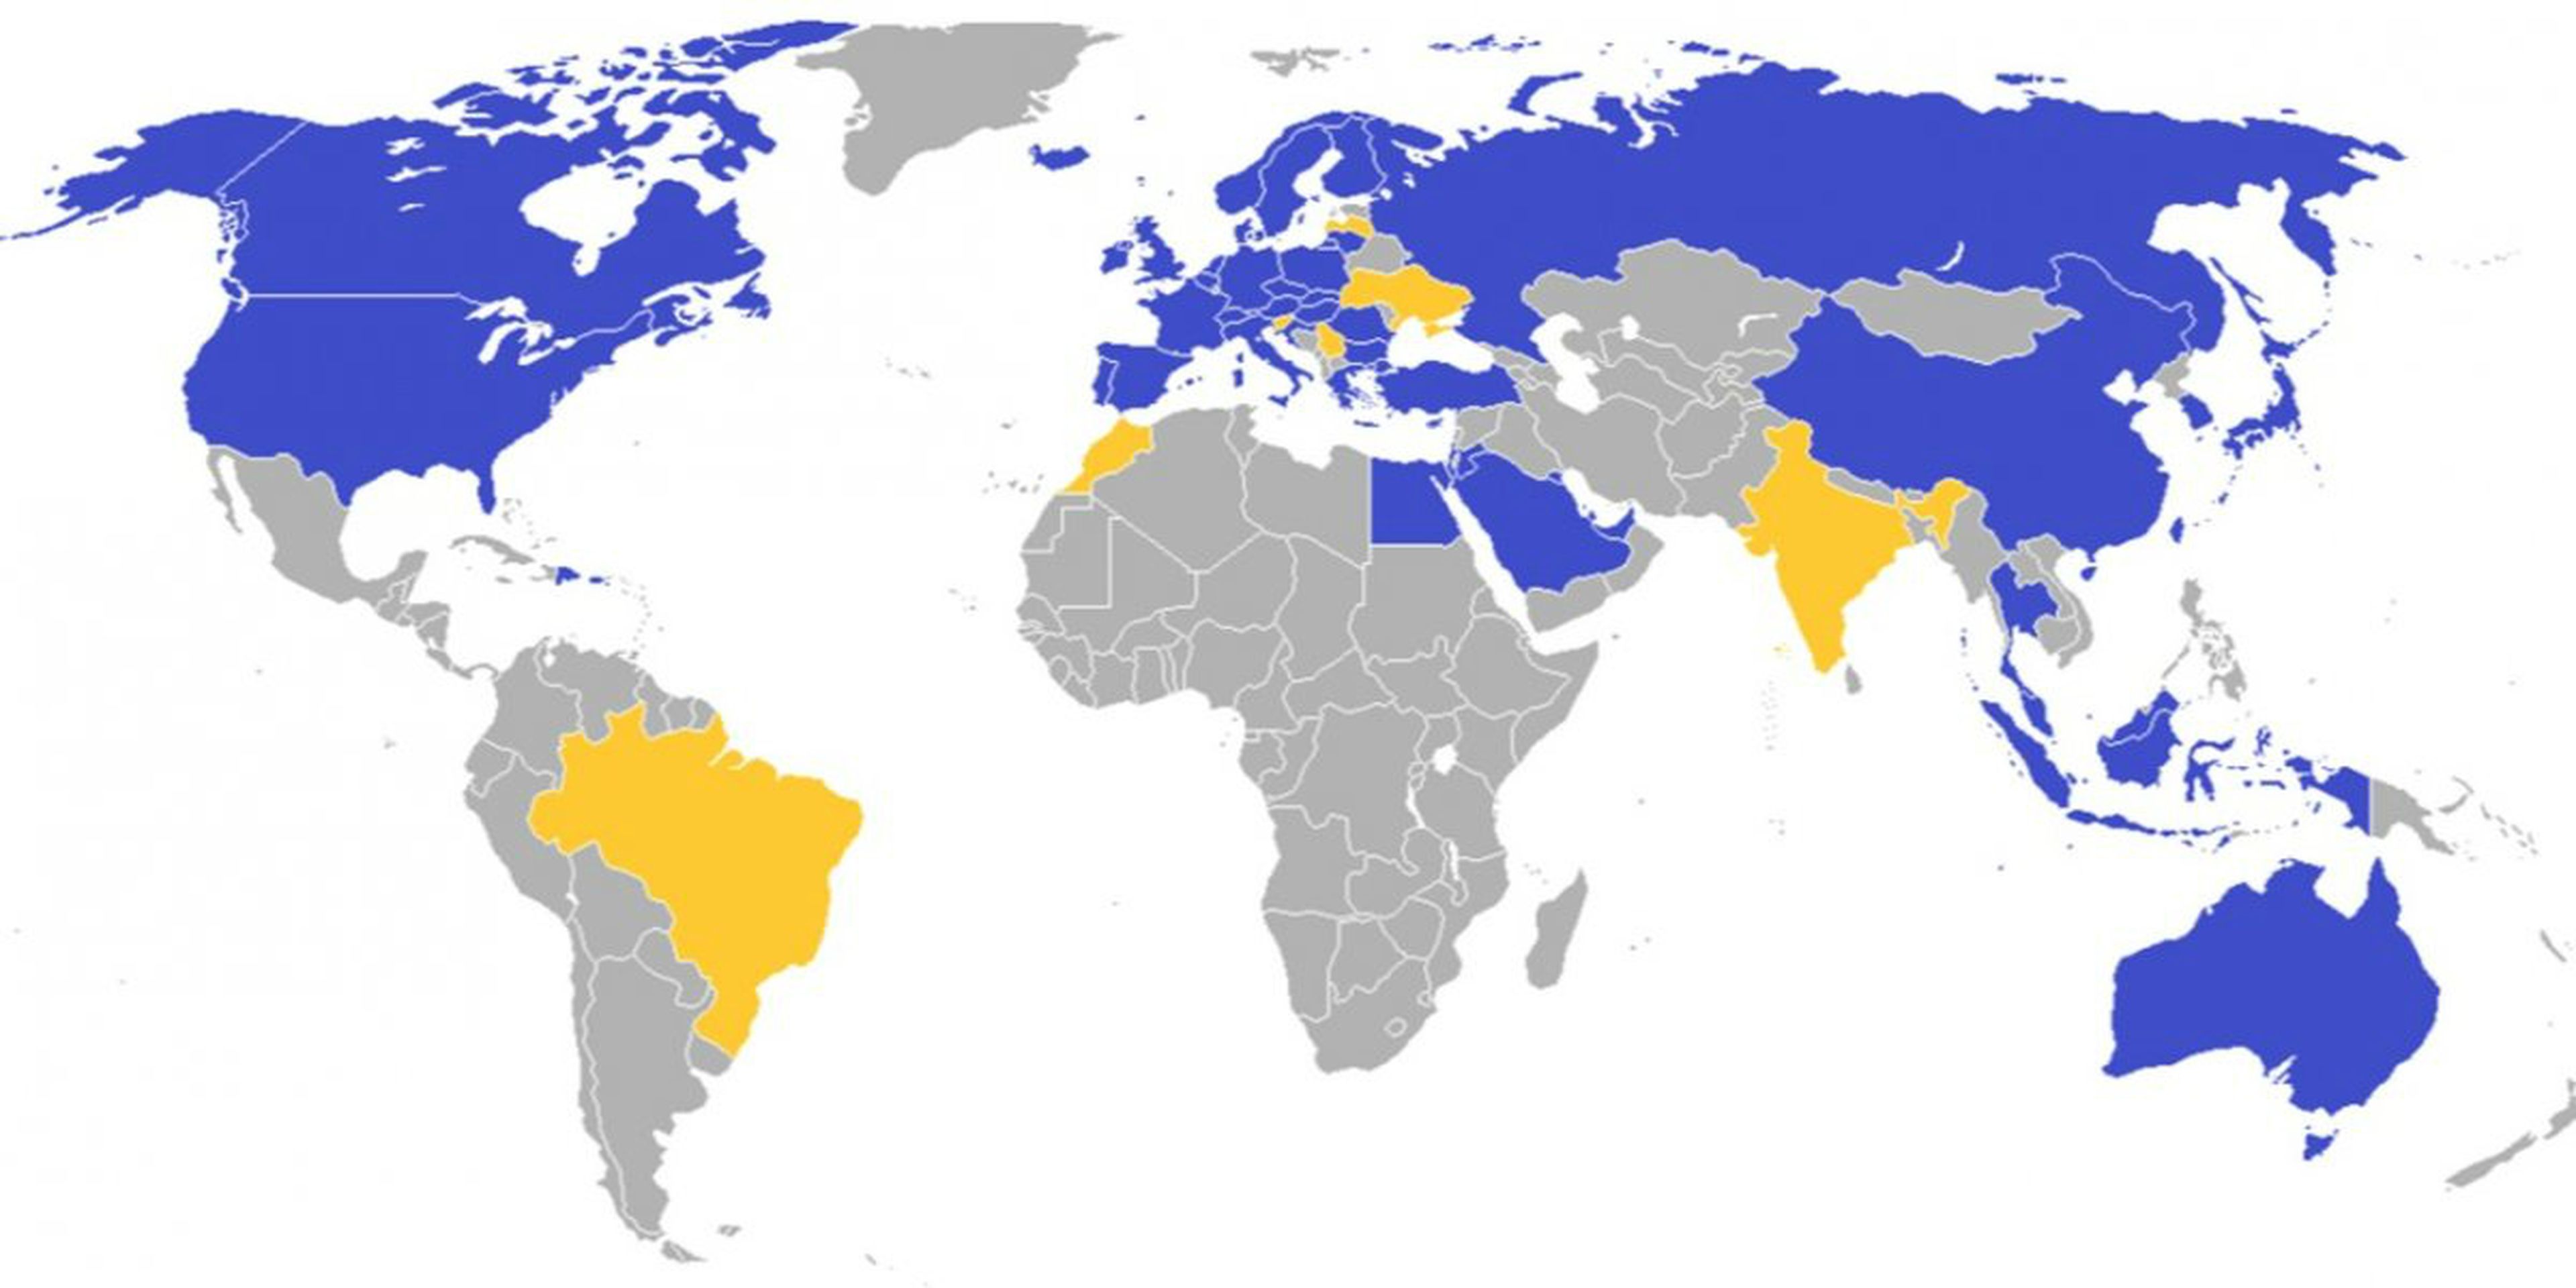 En azul, los países donde Ikea ya cuenta con tiendas abiertas; en amarillo, los países en los que se espera se abran en un futuro próximo.